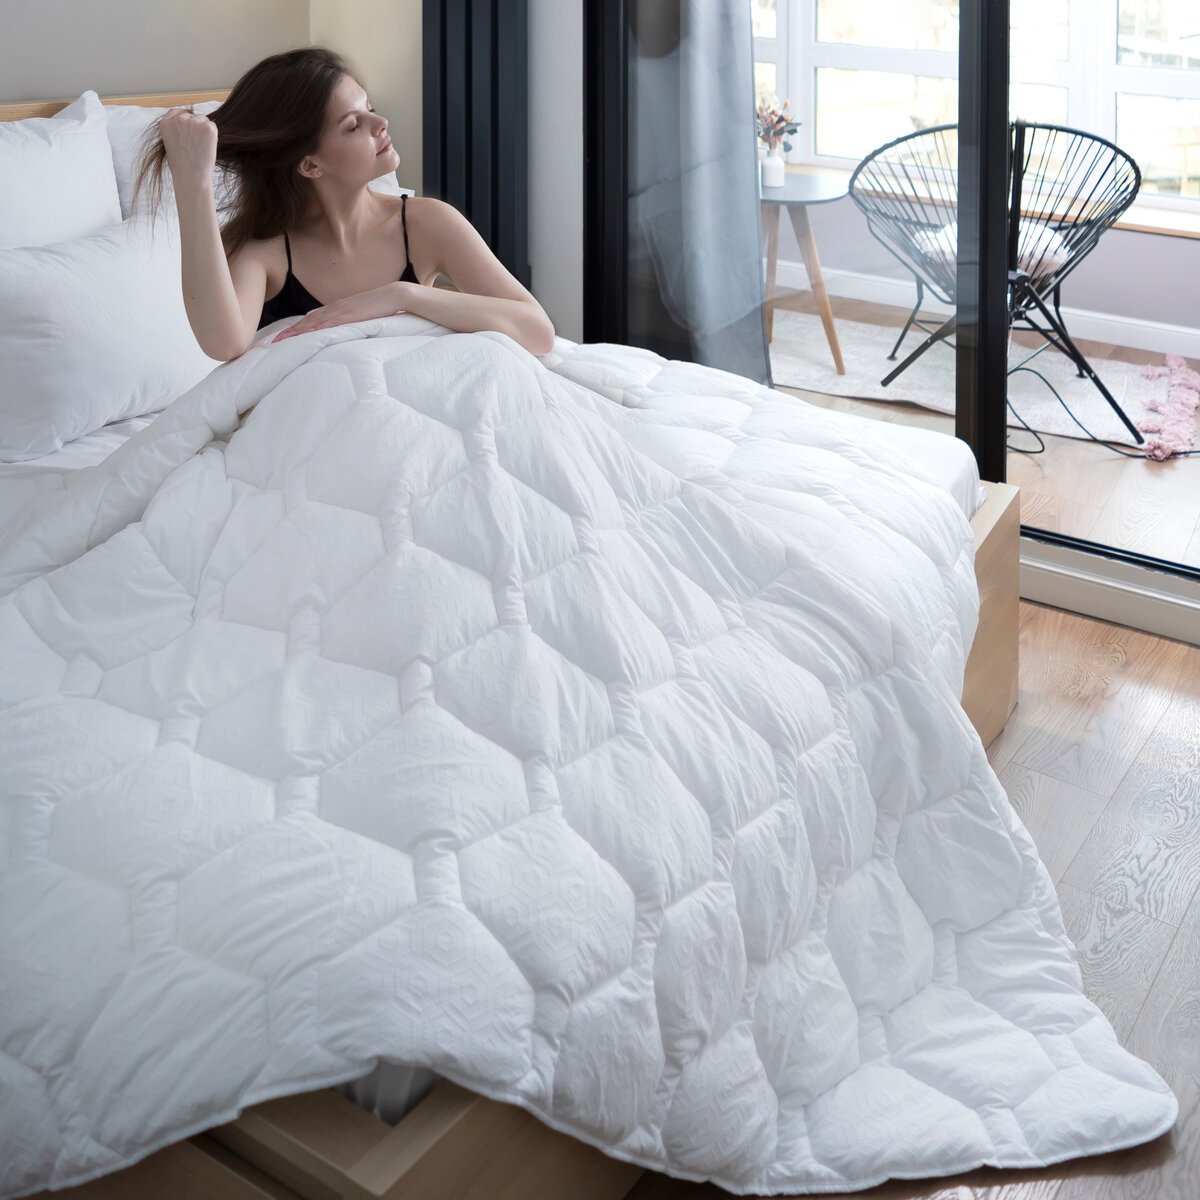 Одеяло Мягкий сон 1,5 спальное 140x205 см белое стеганое мягкое воздушное /для сна, для дома , в подарок / для дачи / всесезонное / для взрослых / для детей / для беременных